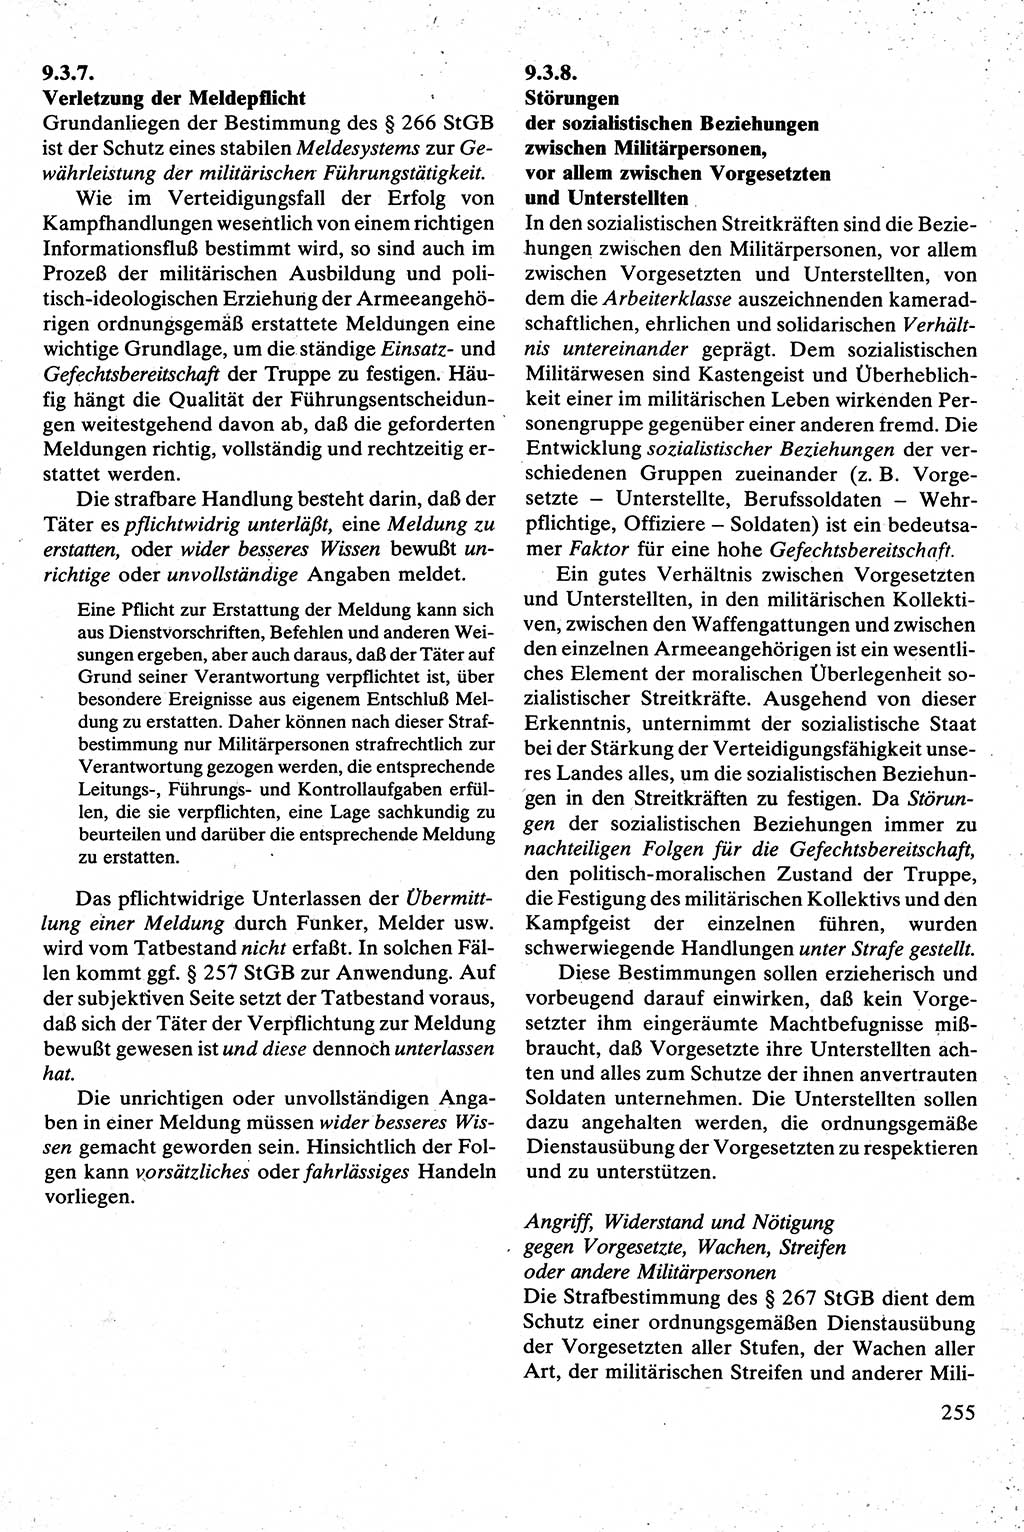 Strafrecht [Deutsche Demokratische Republik (DDR)], Besonderer Teil, Lehrbuch 1981, Seite 255 (Strafr. DDR BT Lb. 1981, S. 255)